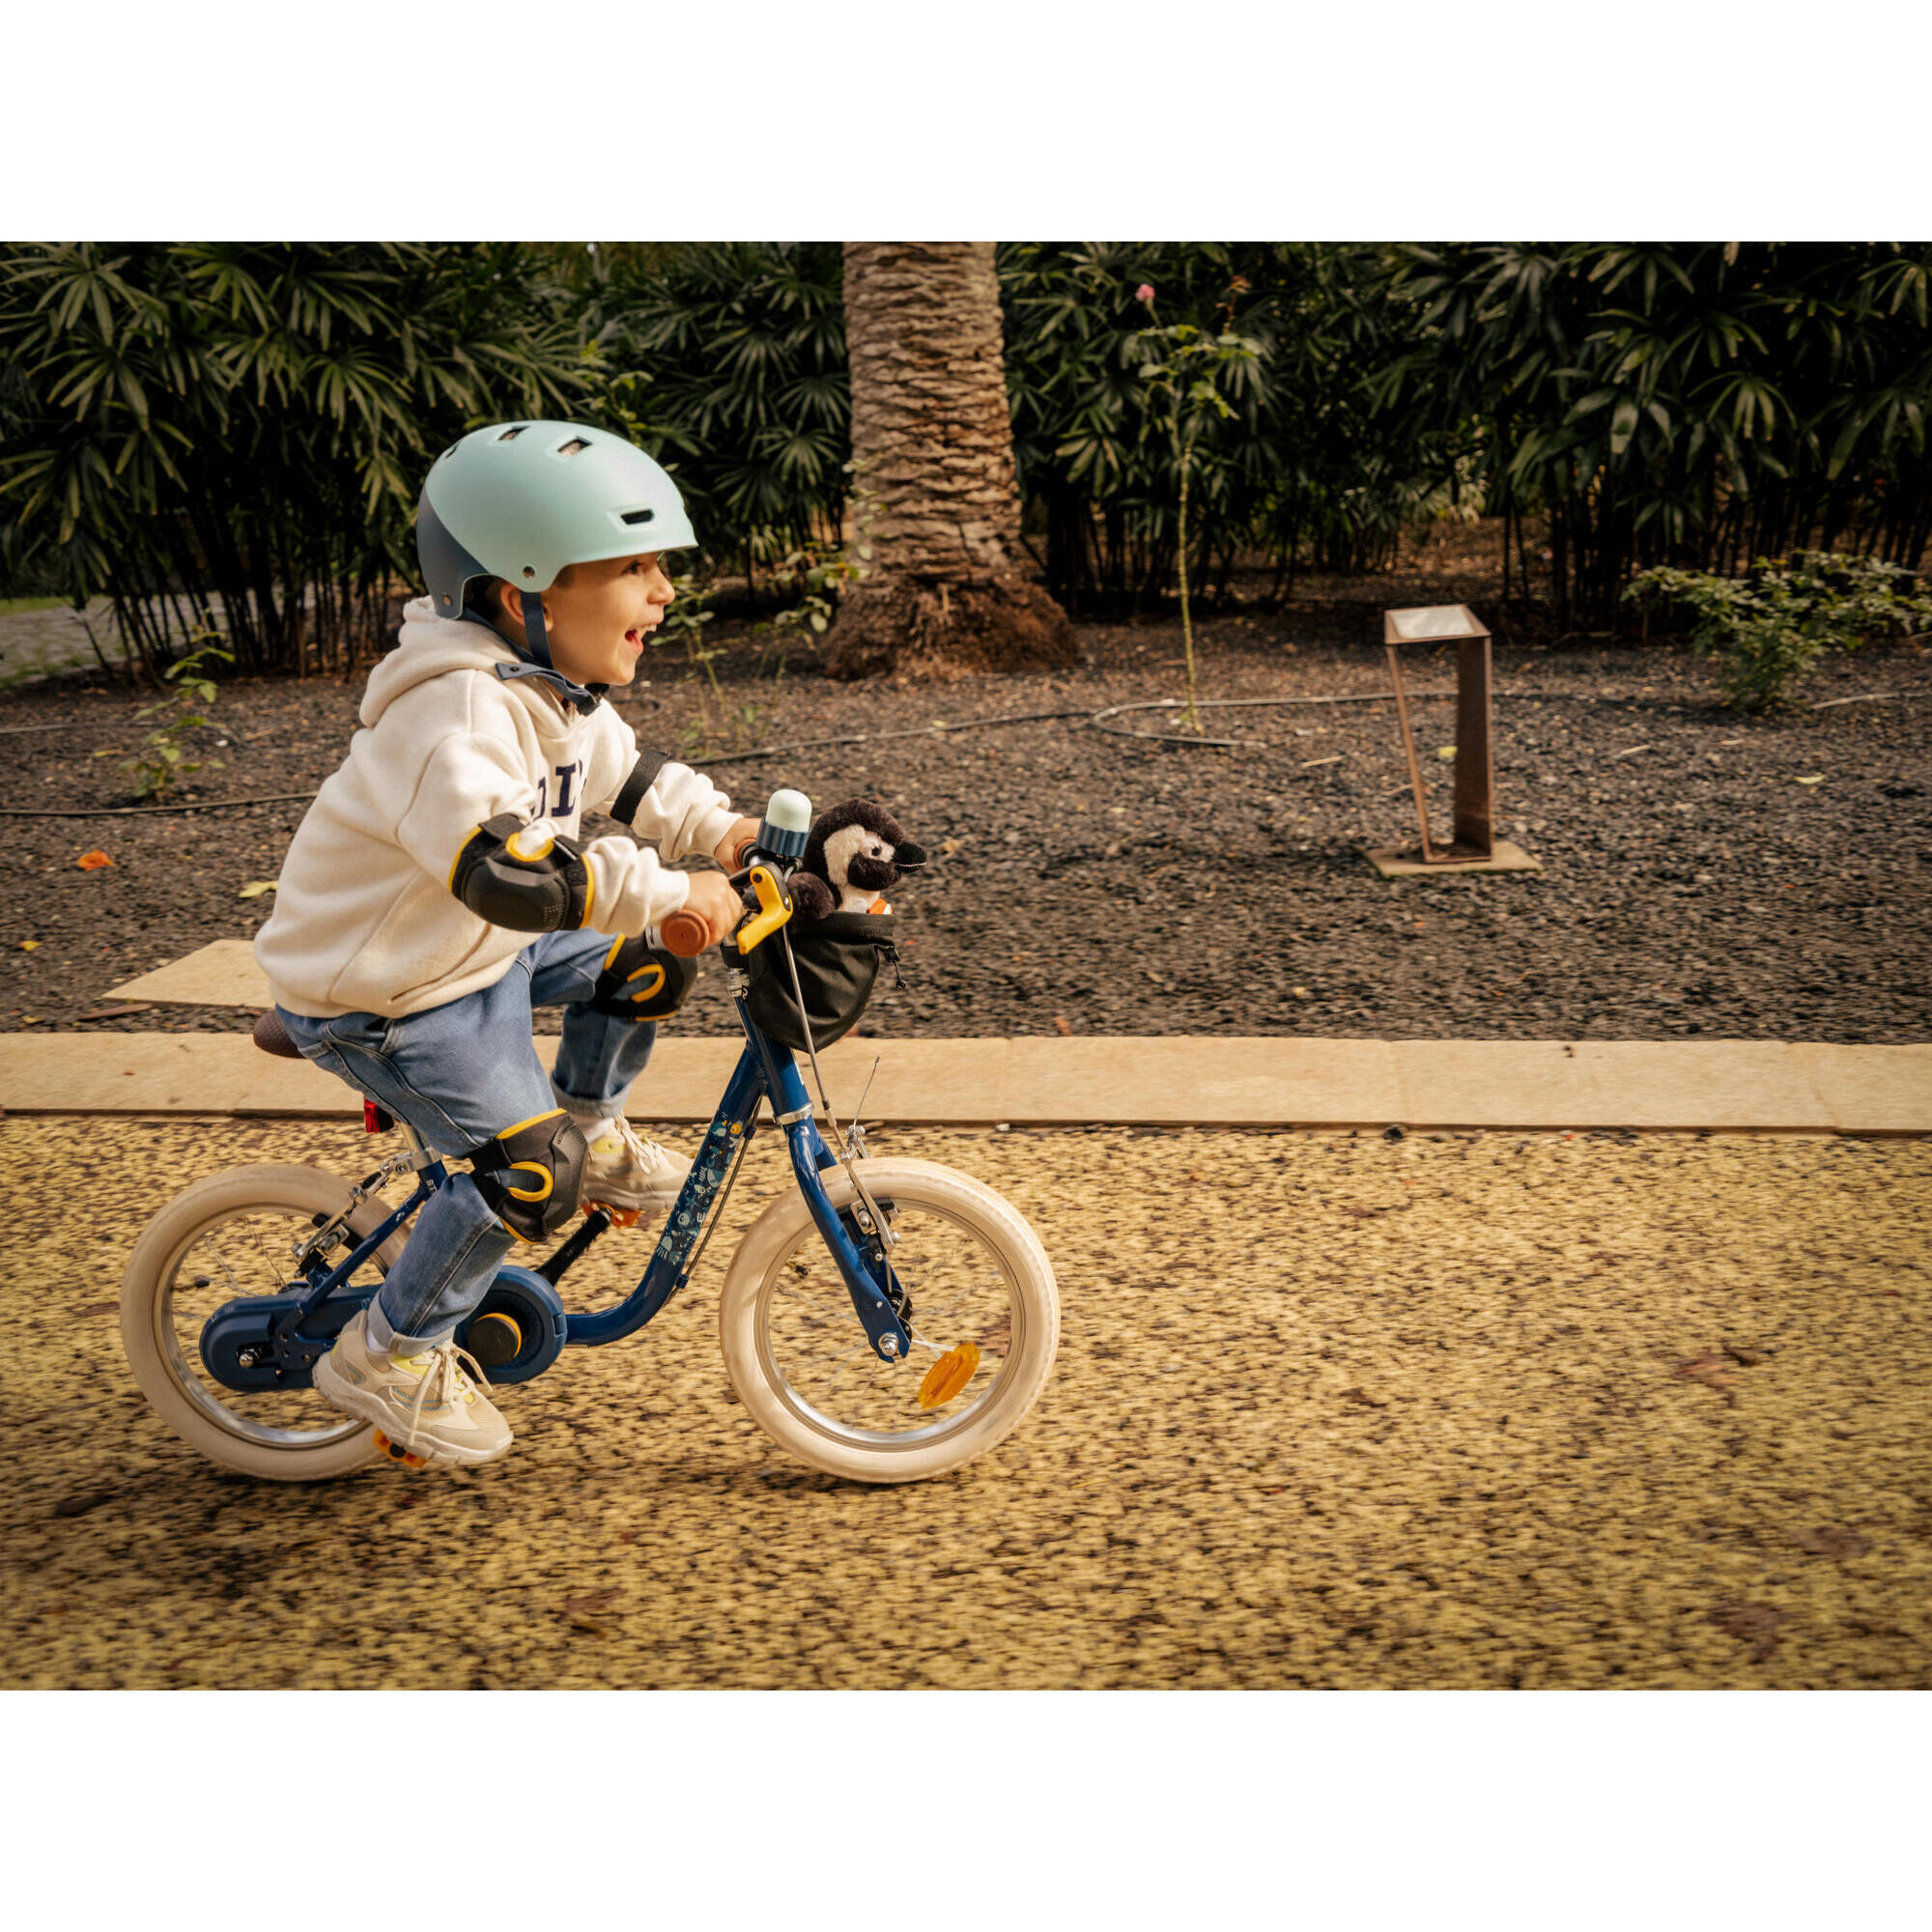 Ensemble 'équipement De Protection De Cyclisme Pour Enfants